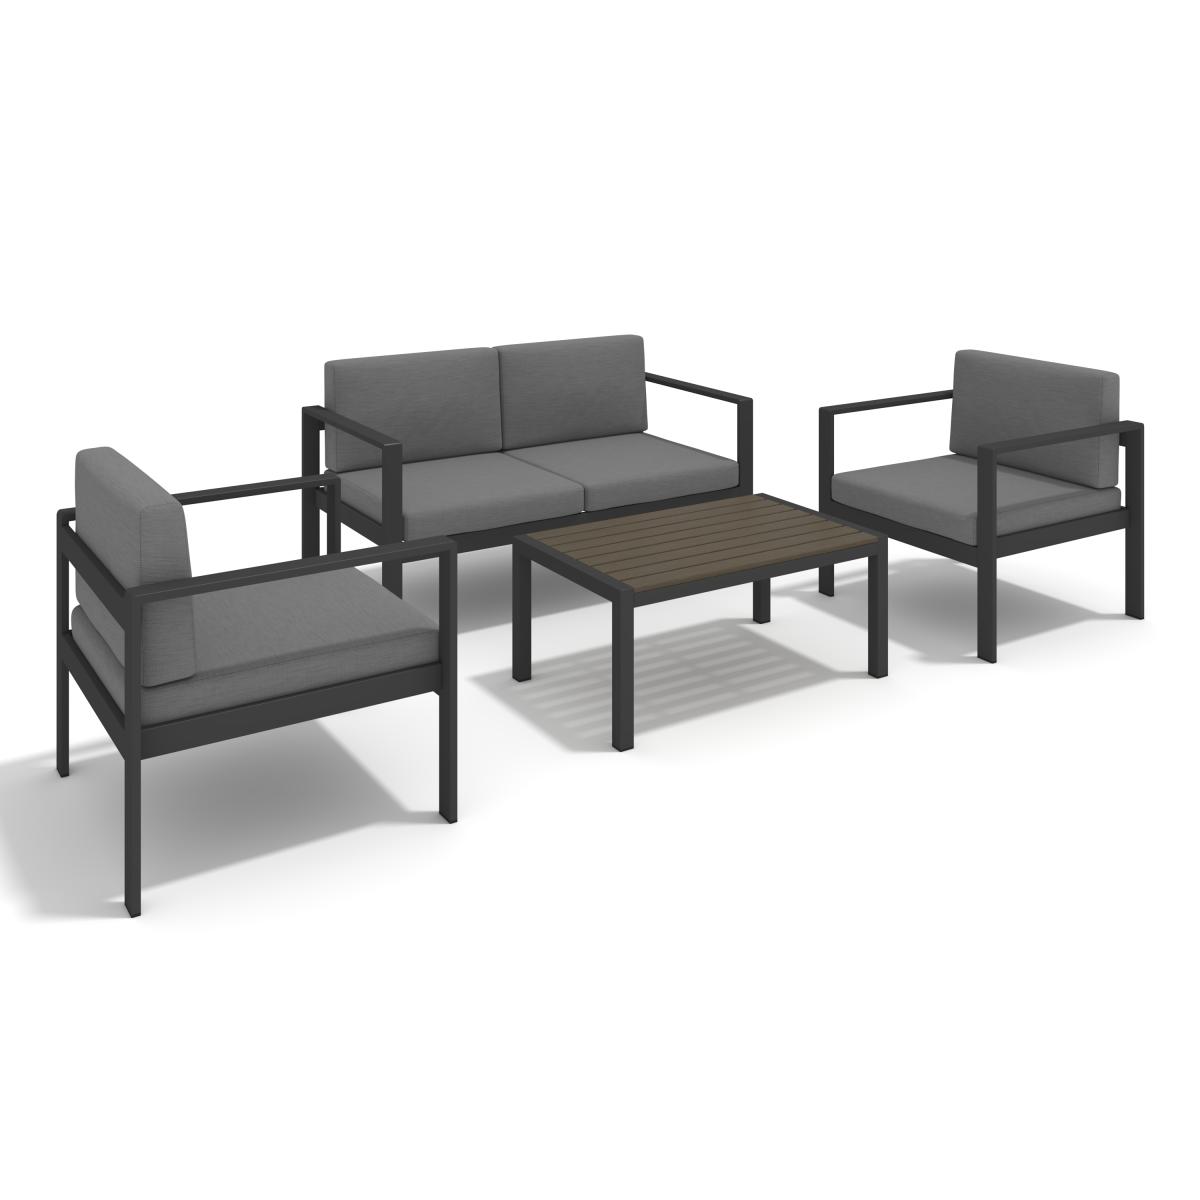 Aluminum Modern 4 Piece Sofa Seating Group For Patio Garden Outdoor